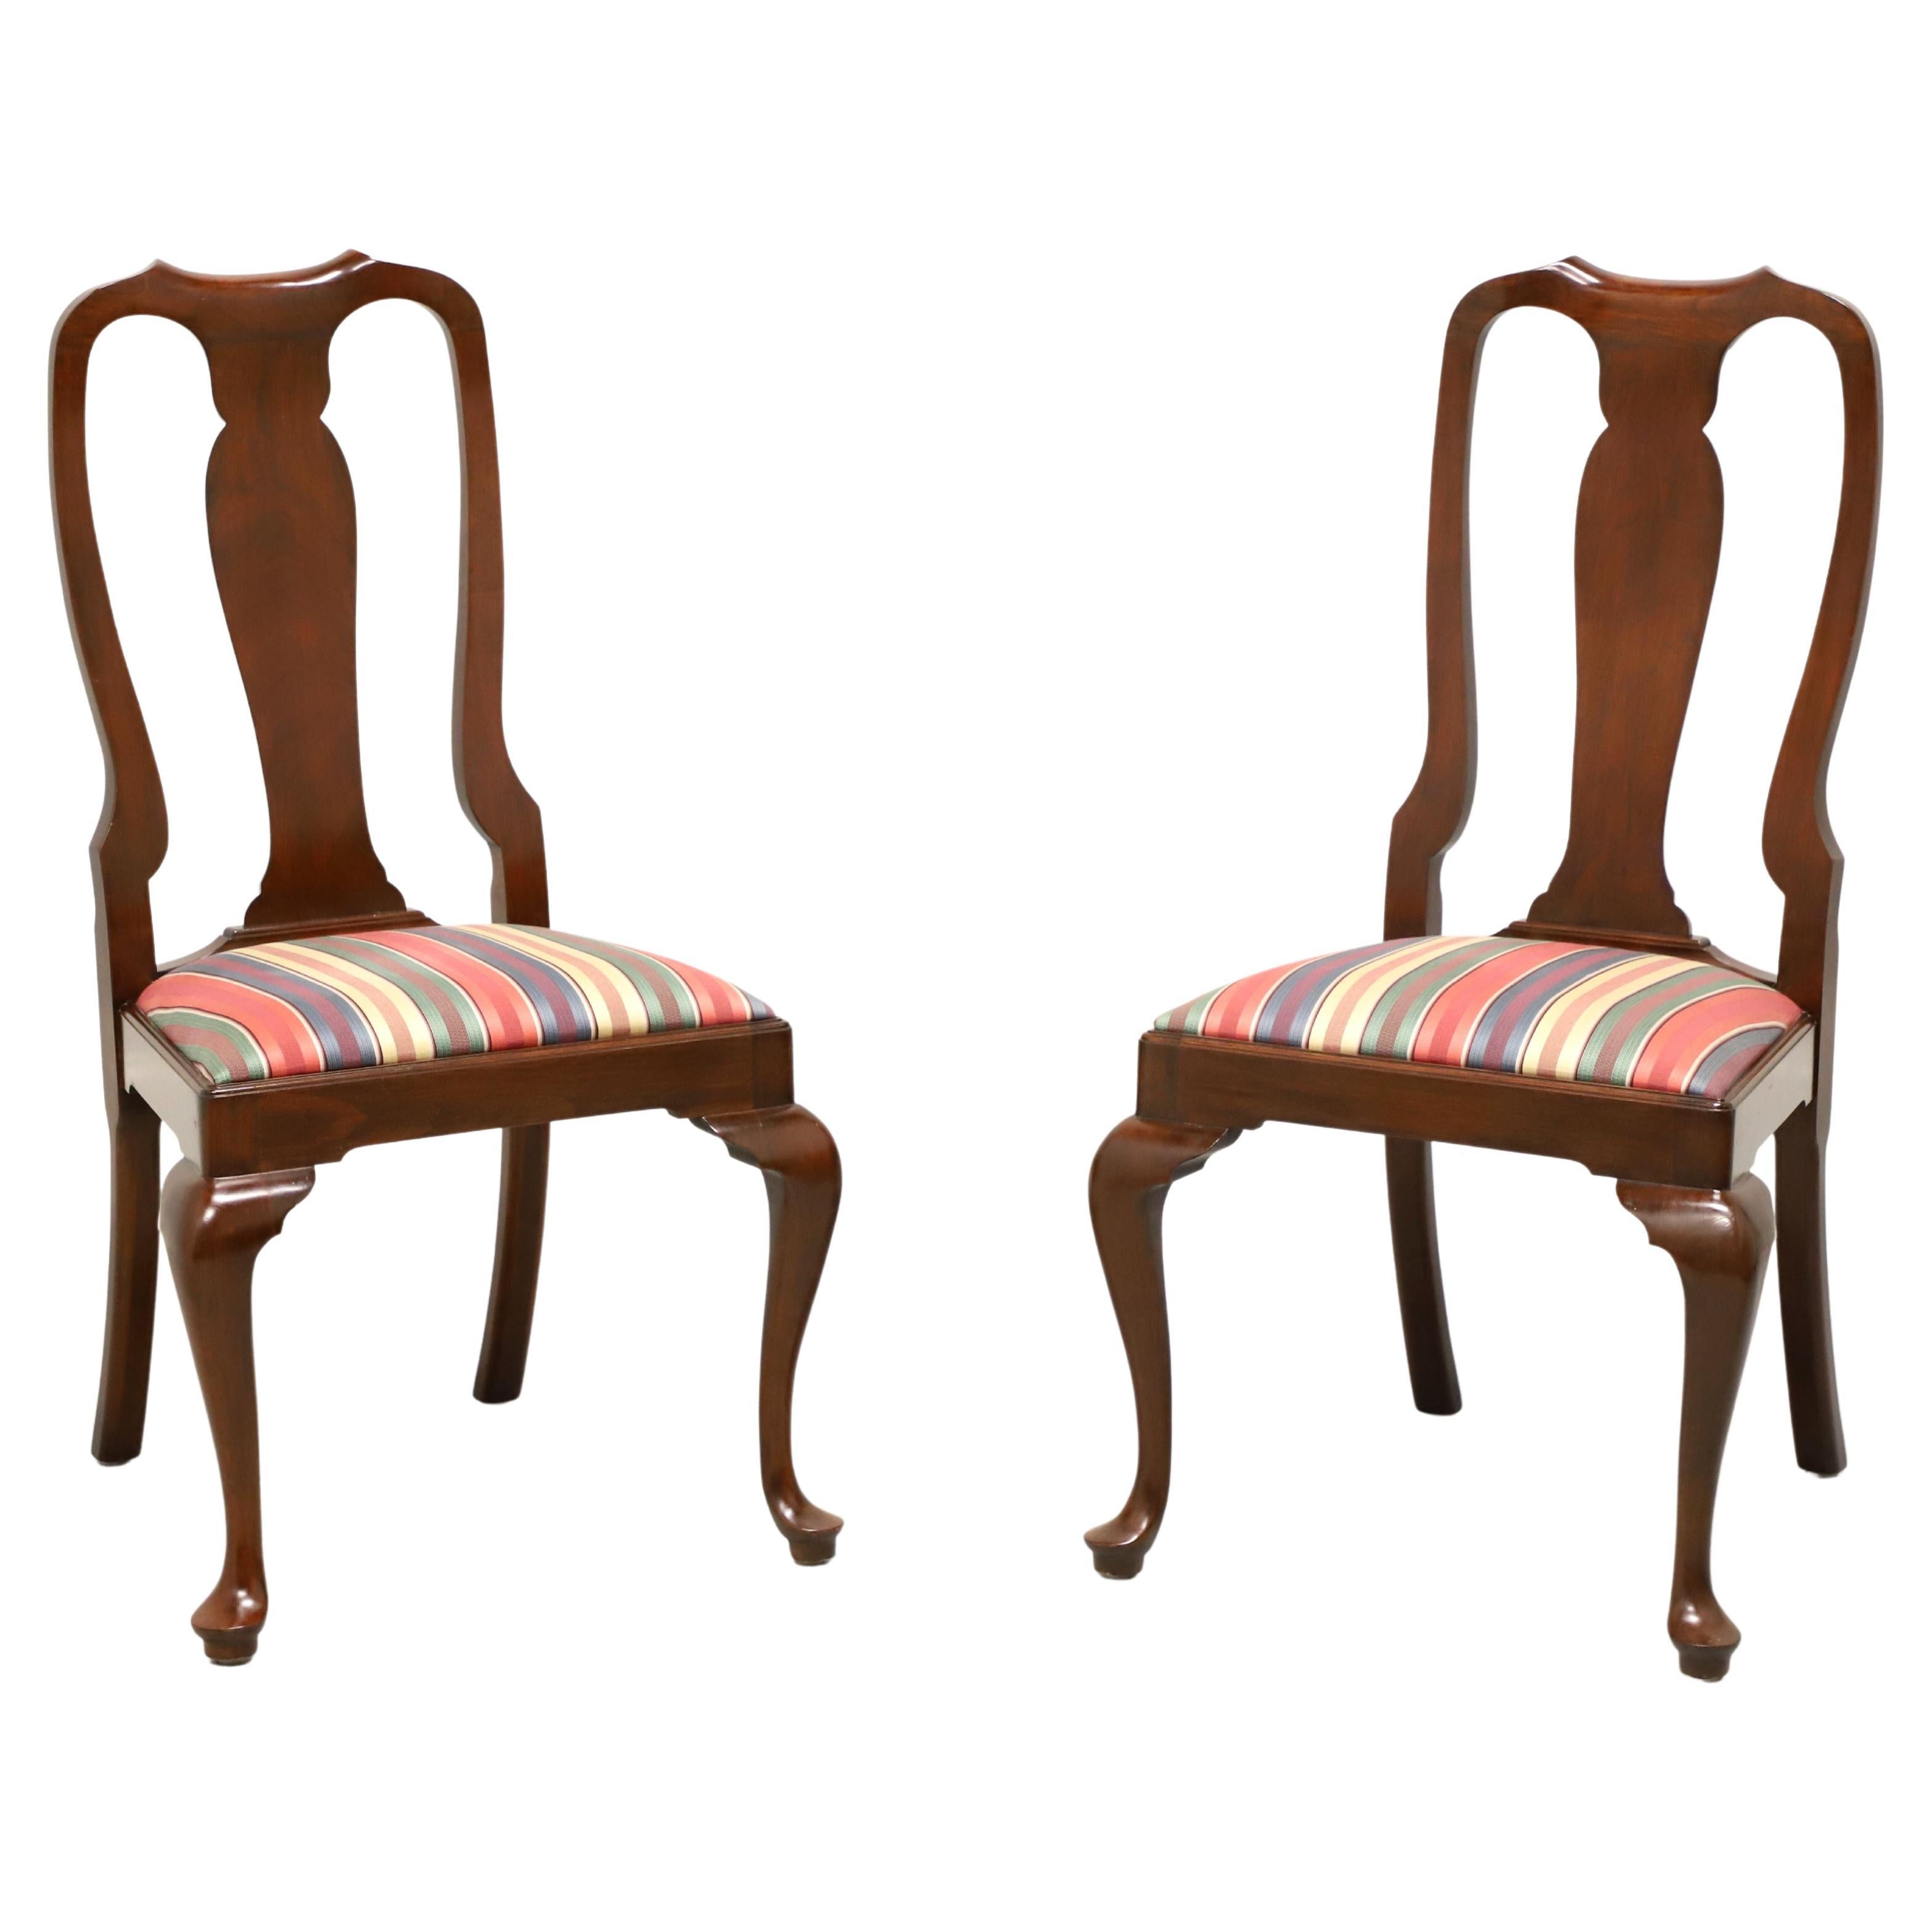 HENKEL HARRIS 105S 22 Wild Black Cherry Queen Anne Dining Side Chairs - Pair B